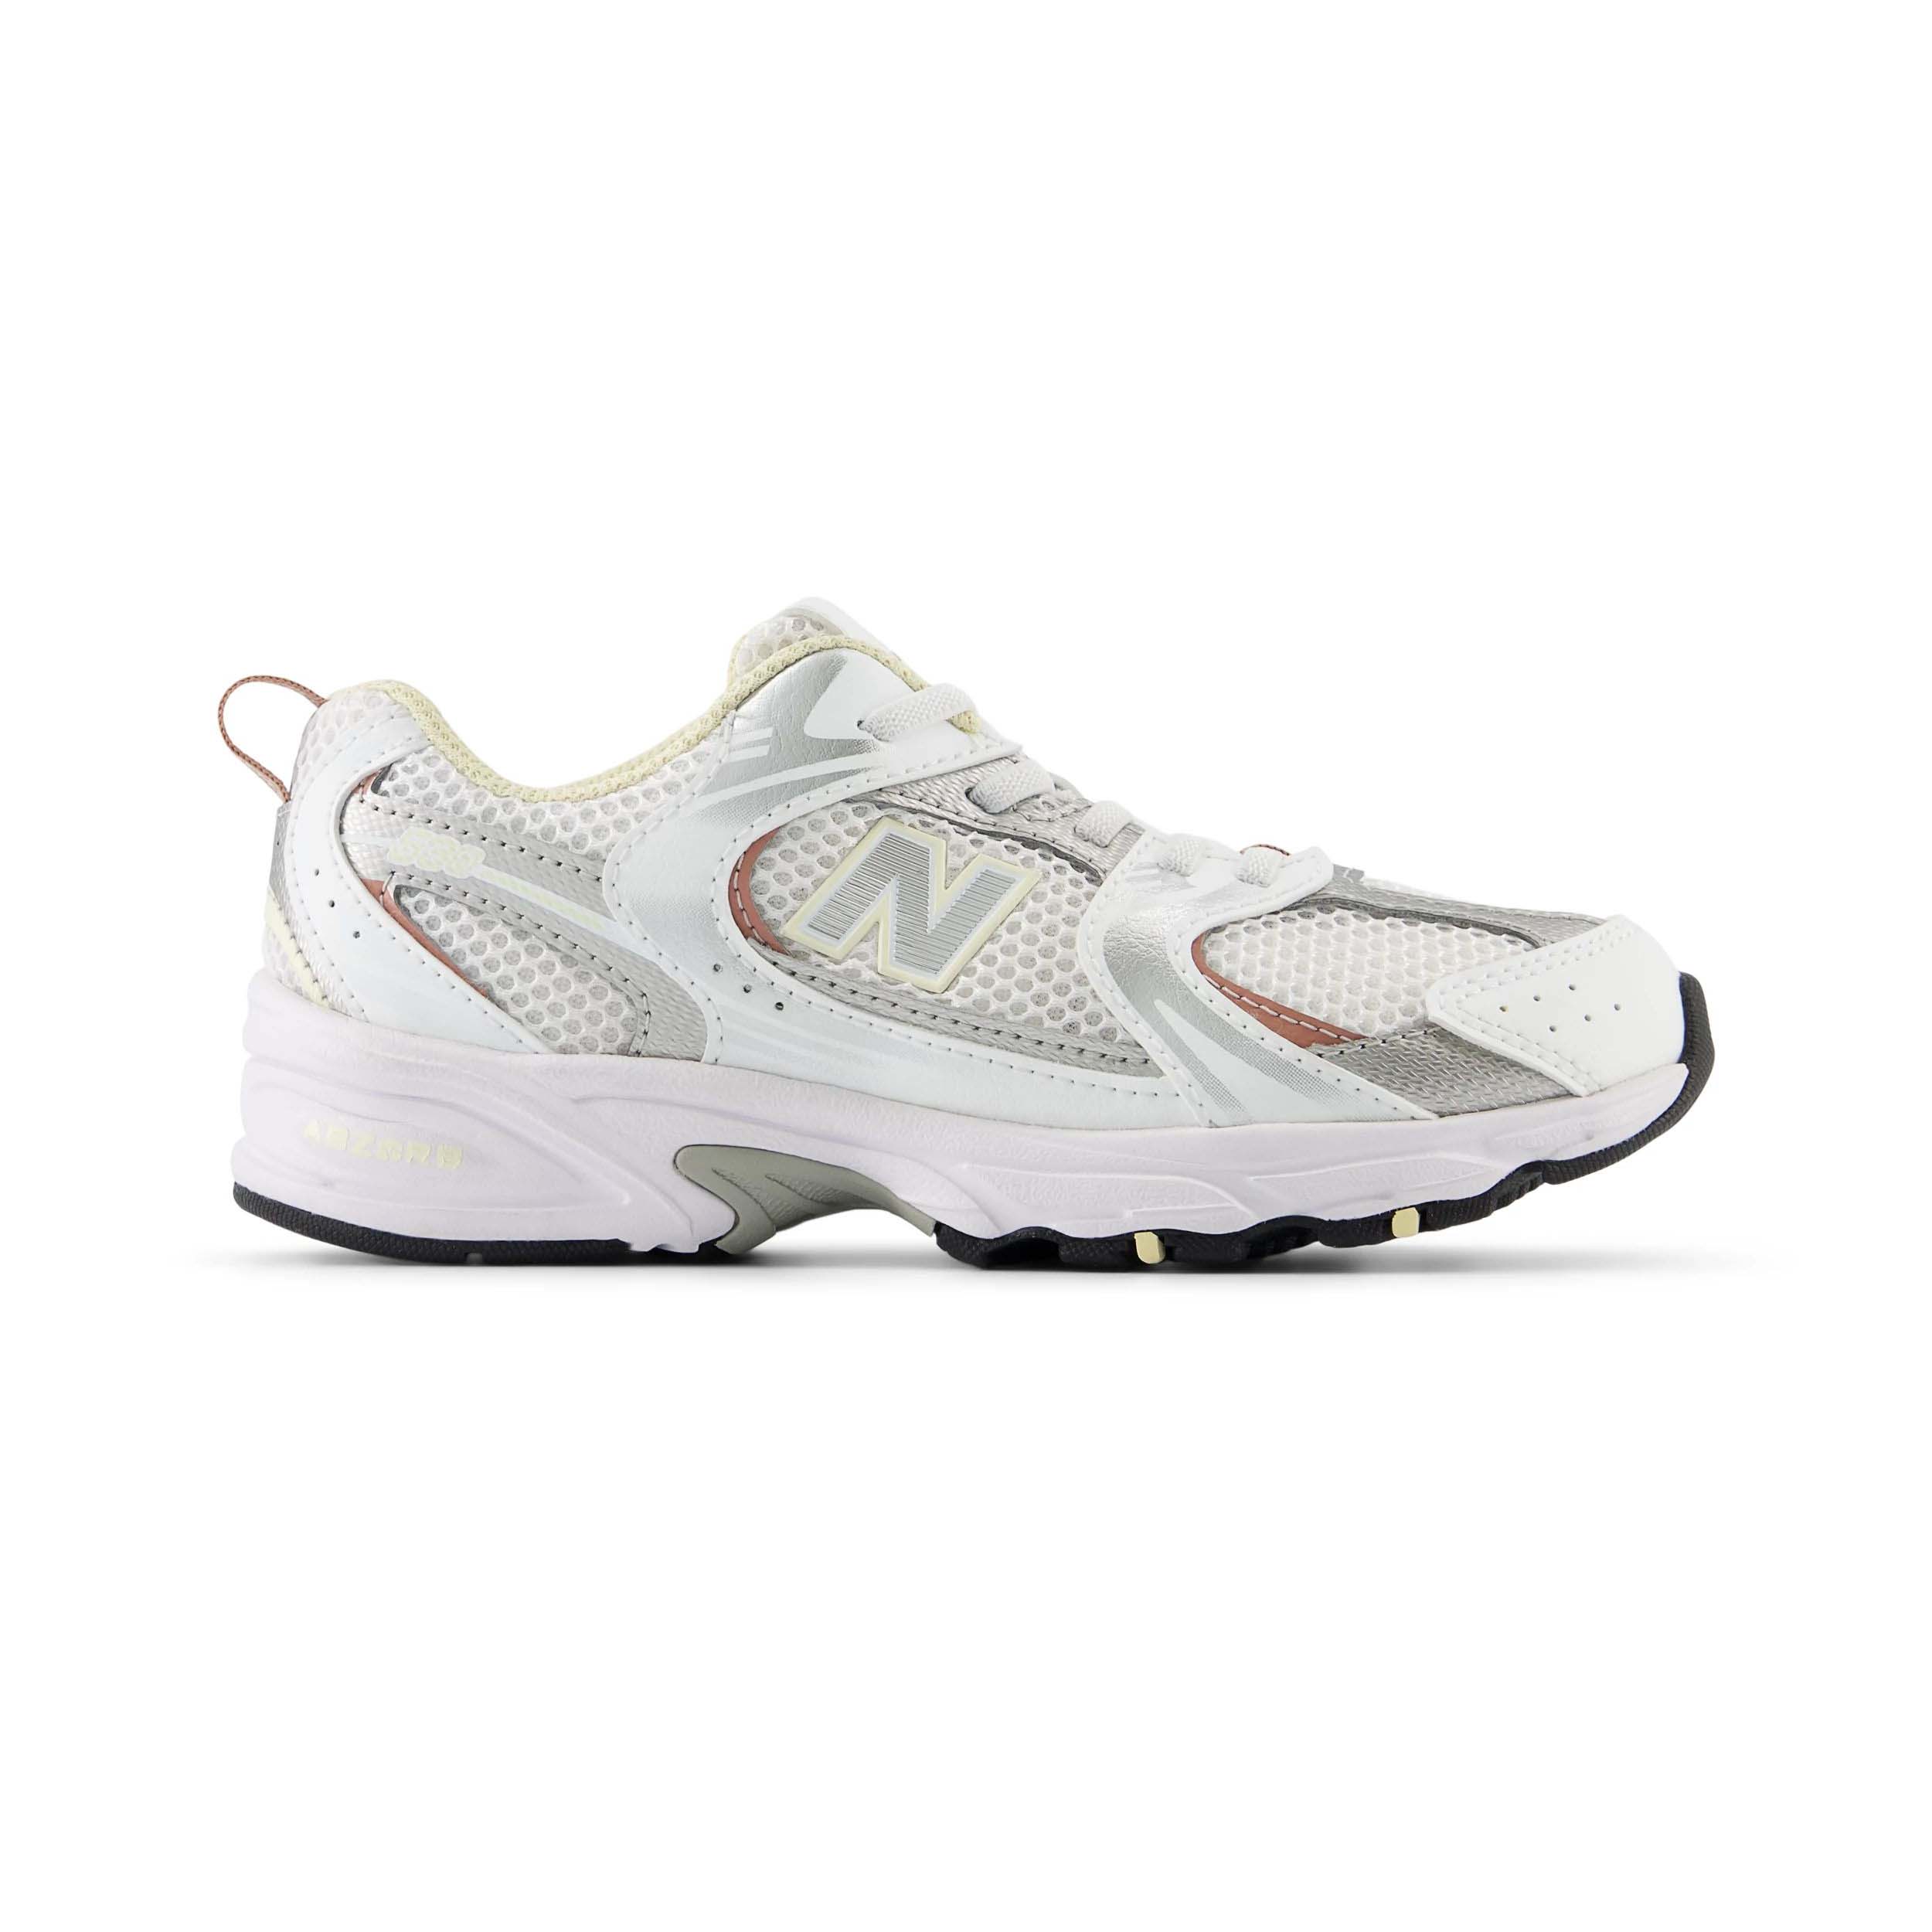 New Balance 530 Sneaker White/Calcium